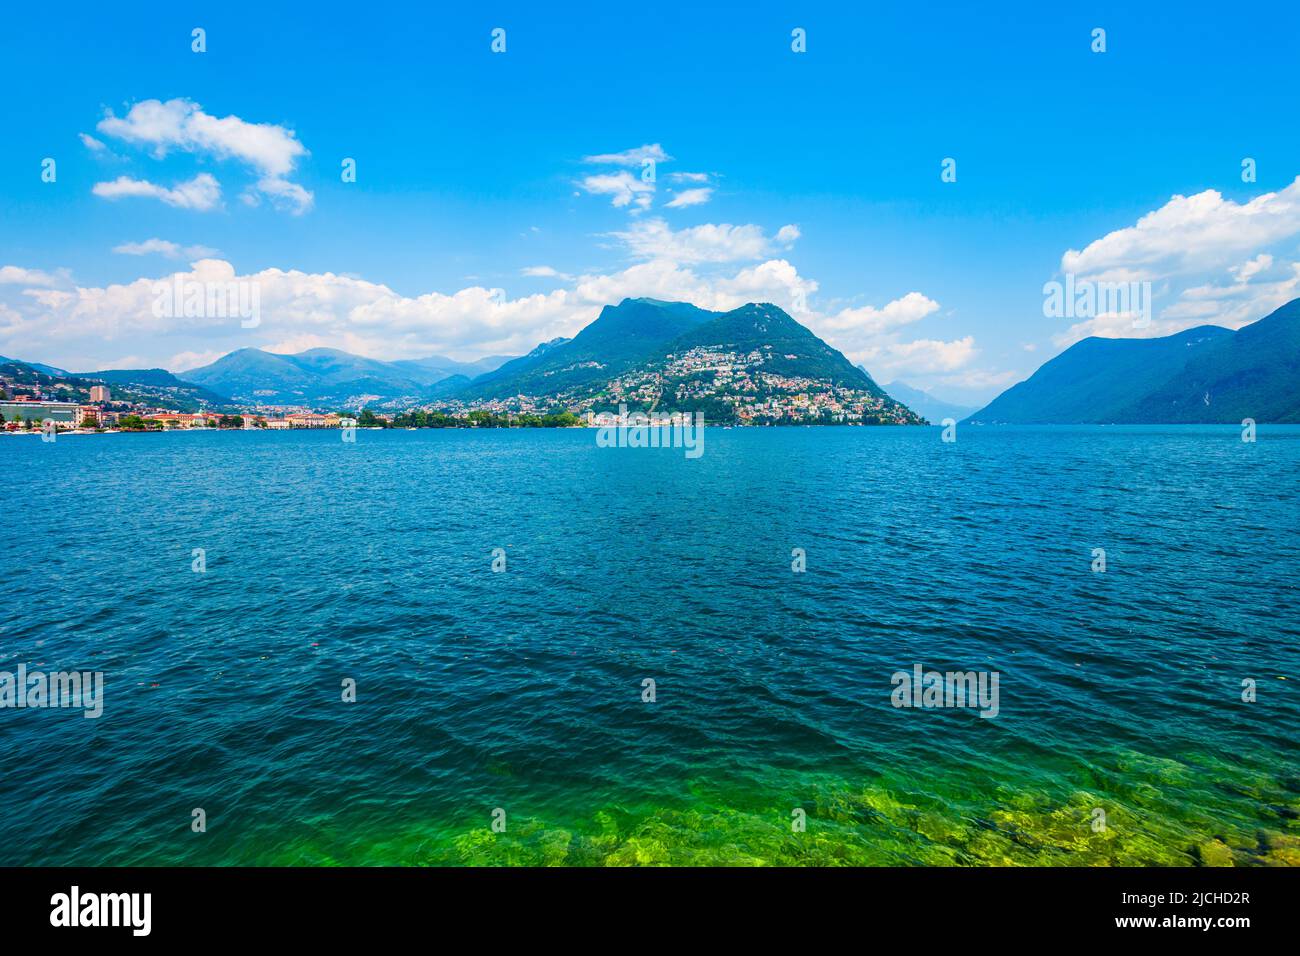 Lago de Lugano y vista panorámica de la ciudad de Lugano, en el cantón de Ticino en Suiza Foto de stock